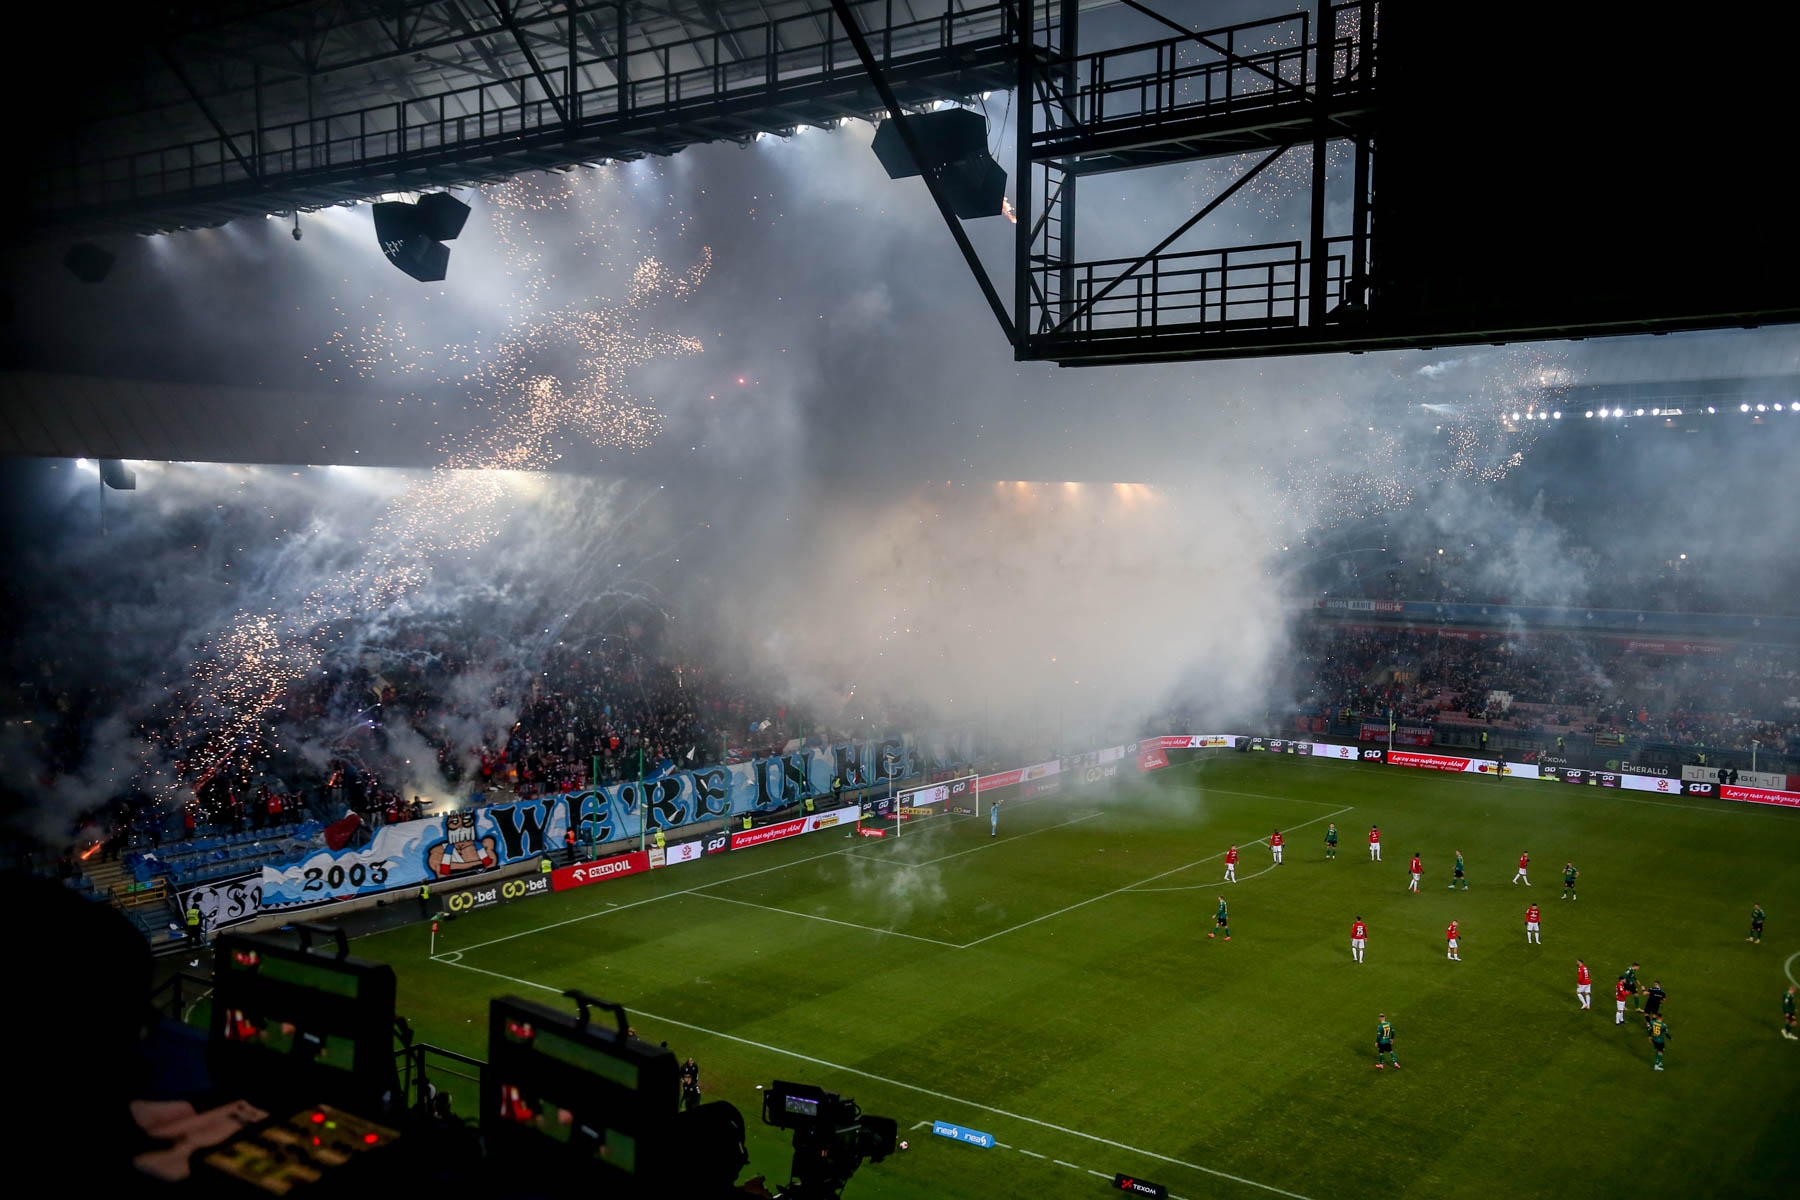 Po odpaleniu fajerwerków przez kibiców, sędzia kazał piłkarzom zejść z boiska. Fot: Mateusz Kaleta/LoveKraków.pl